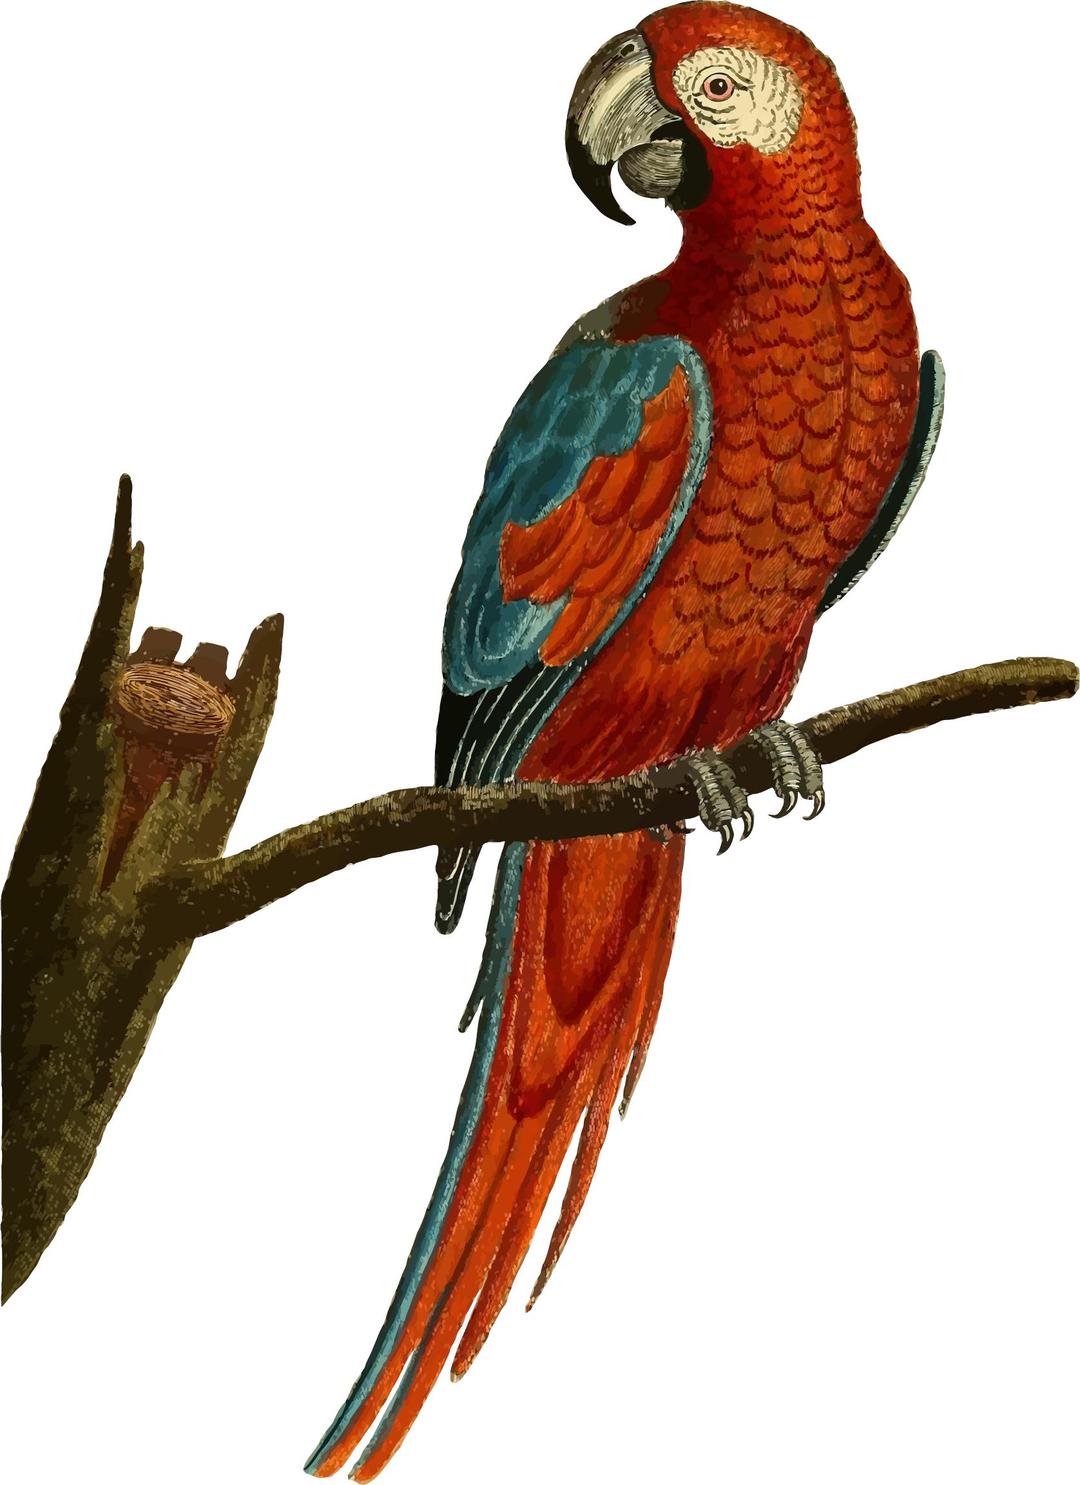 Vintage Deep Red Parrot Illustration png transparent